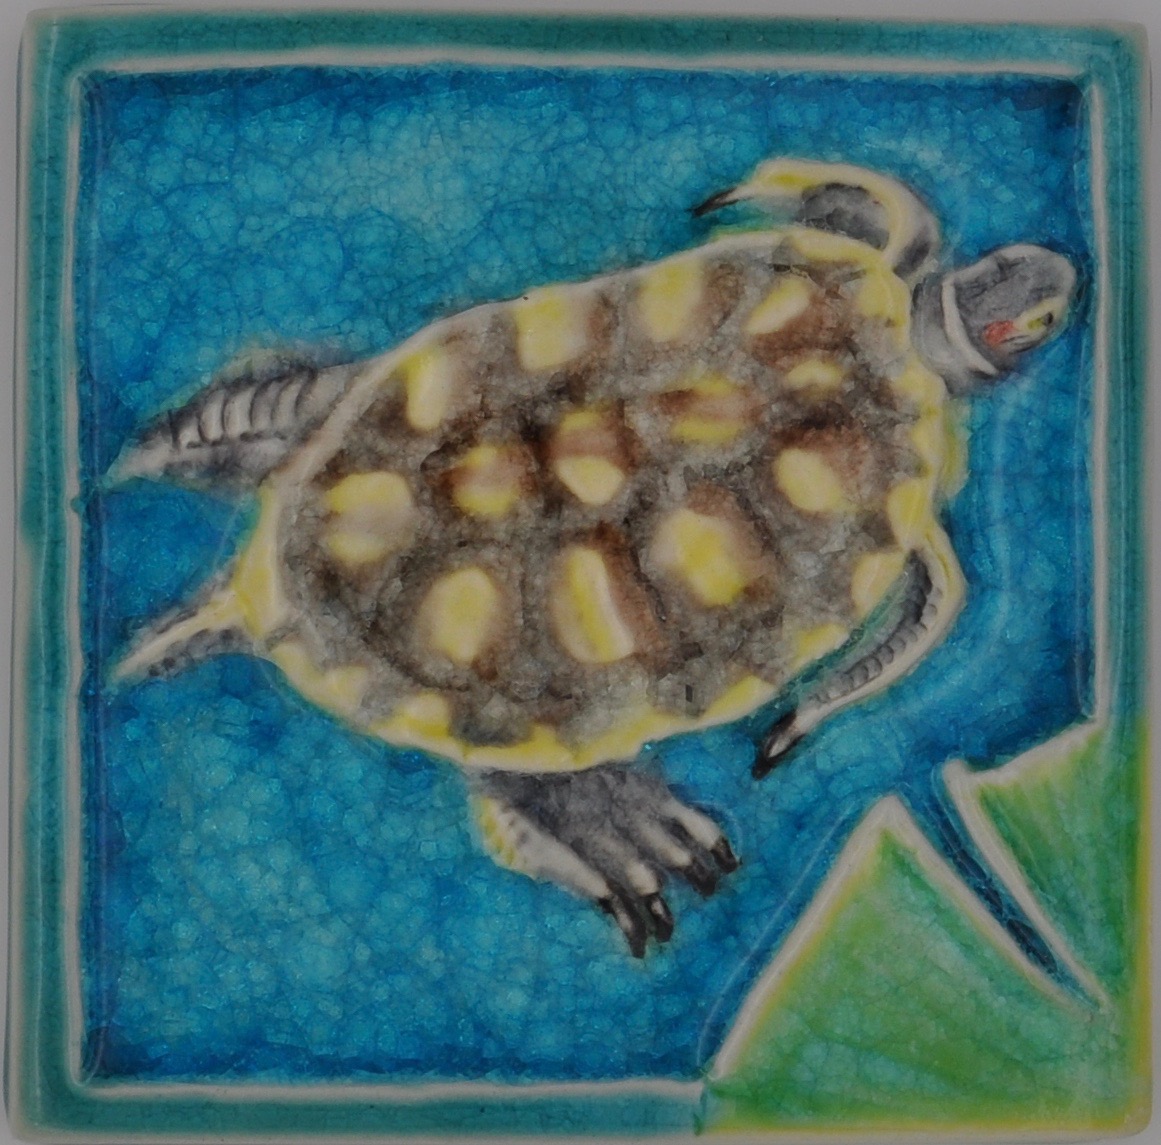 6 " turtle tile